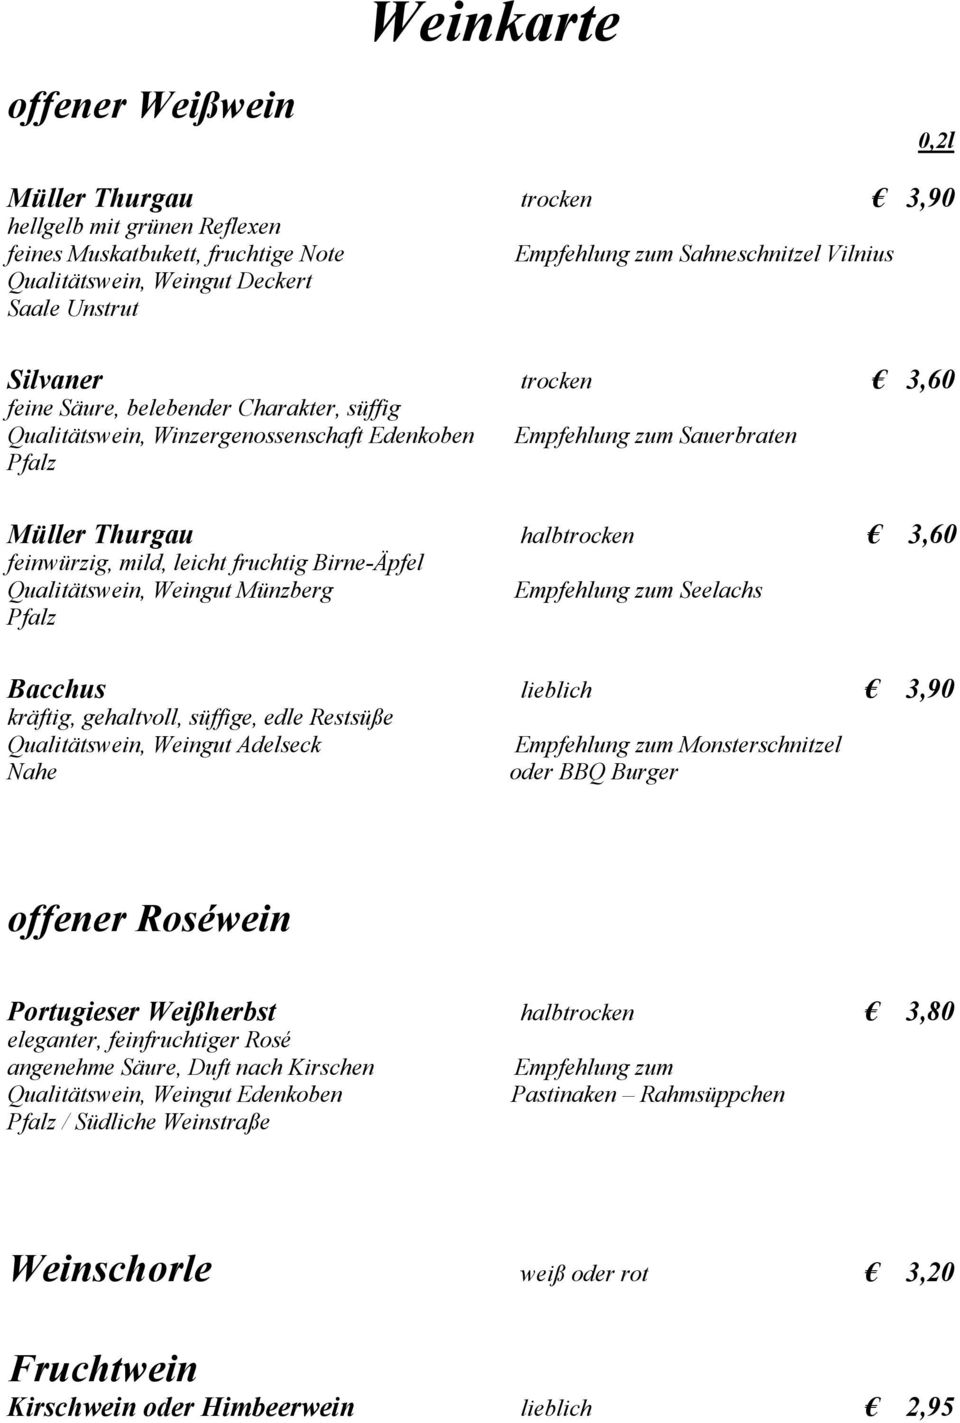 mild, leicht fruchtig Birne-Äpfel Qualitätswein, Weingut Münzberg Pfalz Empfehlung zum Seelachs Bacchus lieblich 3,90 kräftig, gehaltvoll, süffige, edle Restsüße Qualitätswein, Weingut Adelseck Nahe